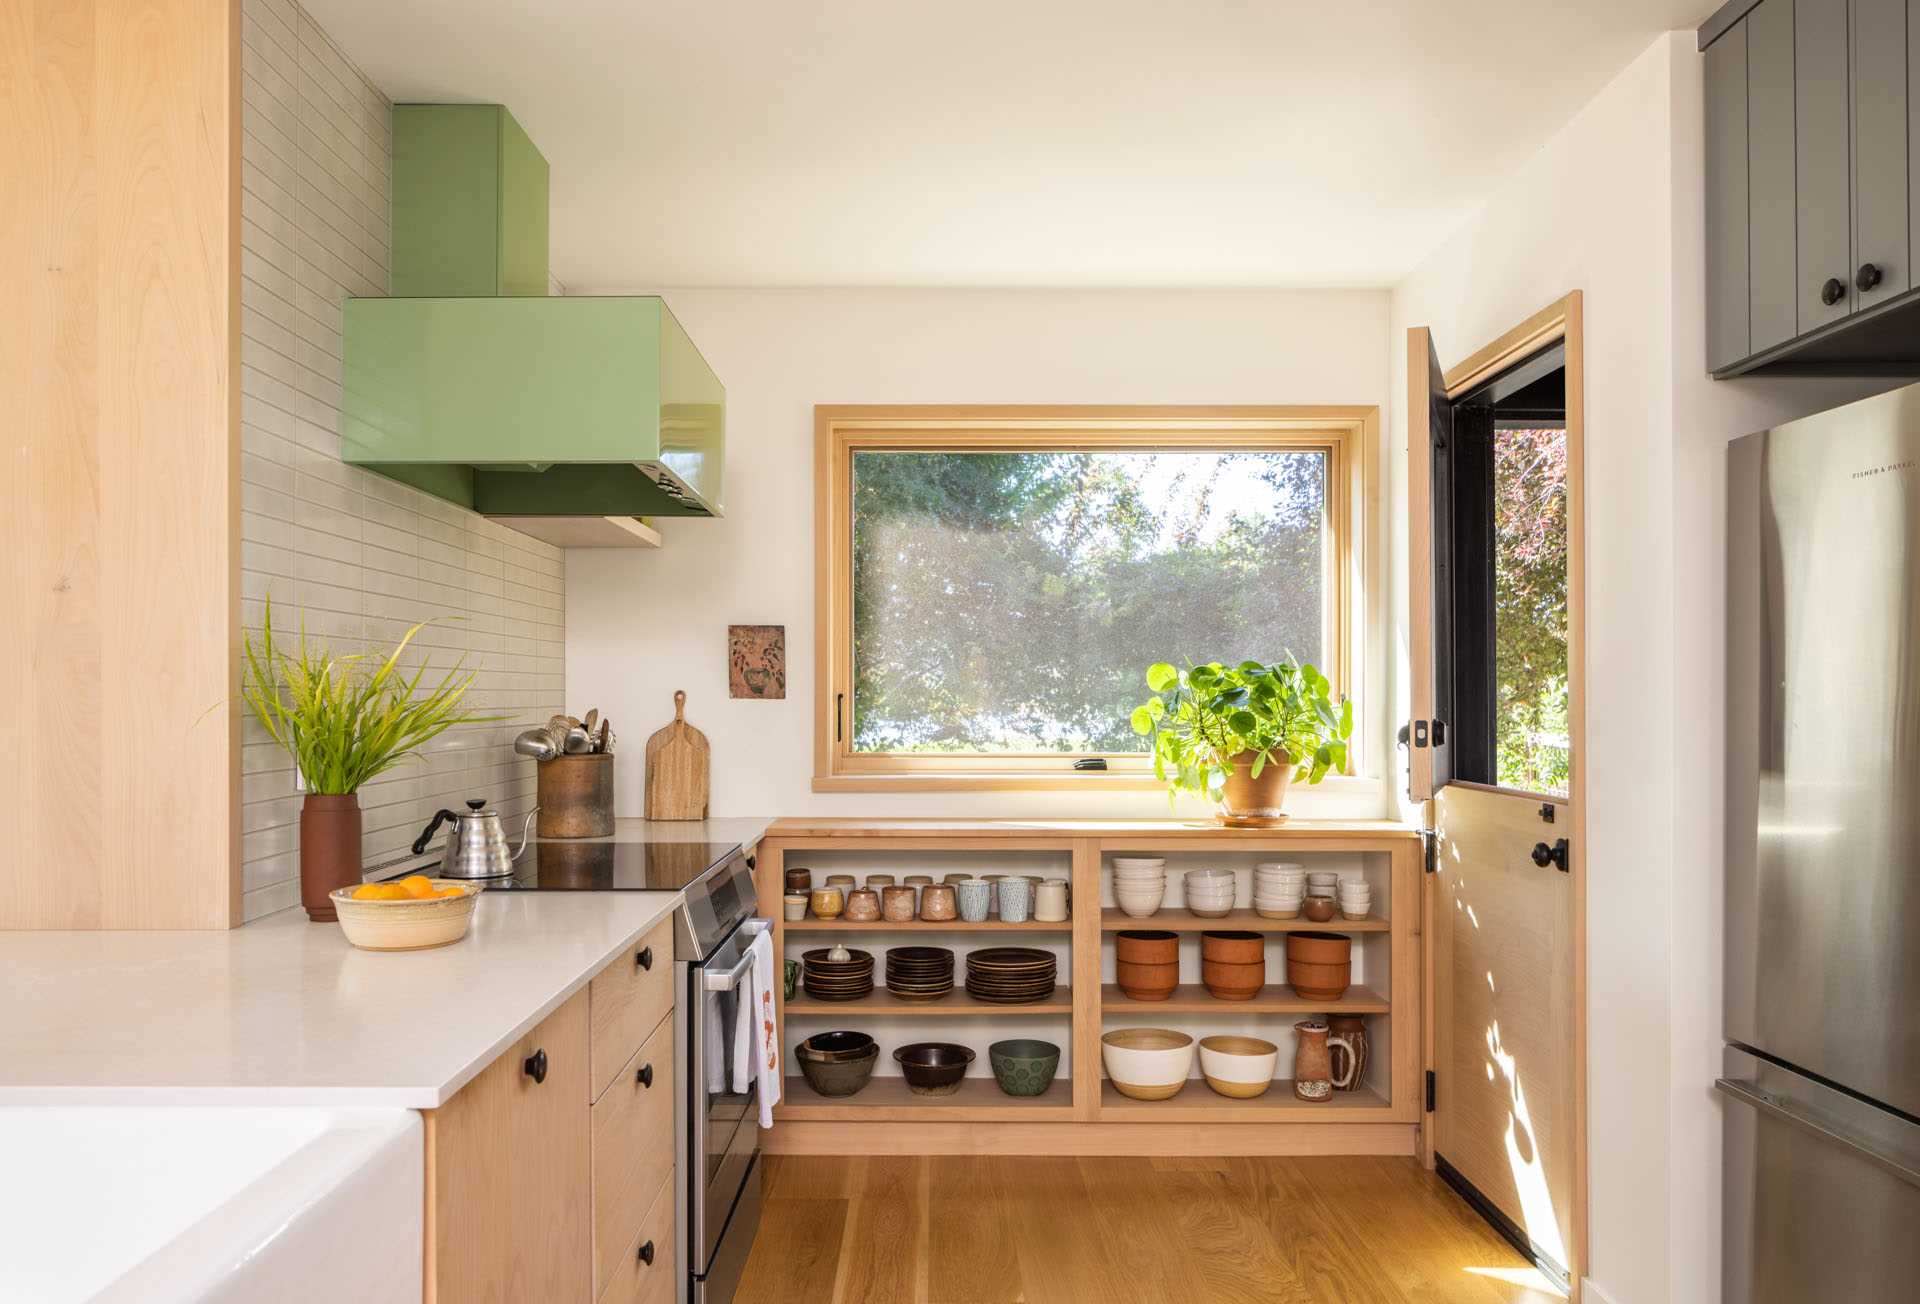 آشپزخانه بازسازی‌شده با کابینت‌های چوبی سبک و قفسه‌های باز، هود سبز رنگ پاستلی، دیواری با کاشی‌های روشن، و کف‌های چوبی.  یک درب هلندی نیز اضافه شد.